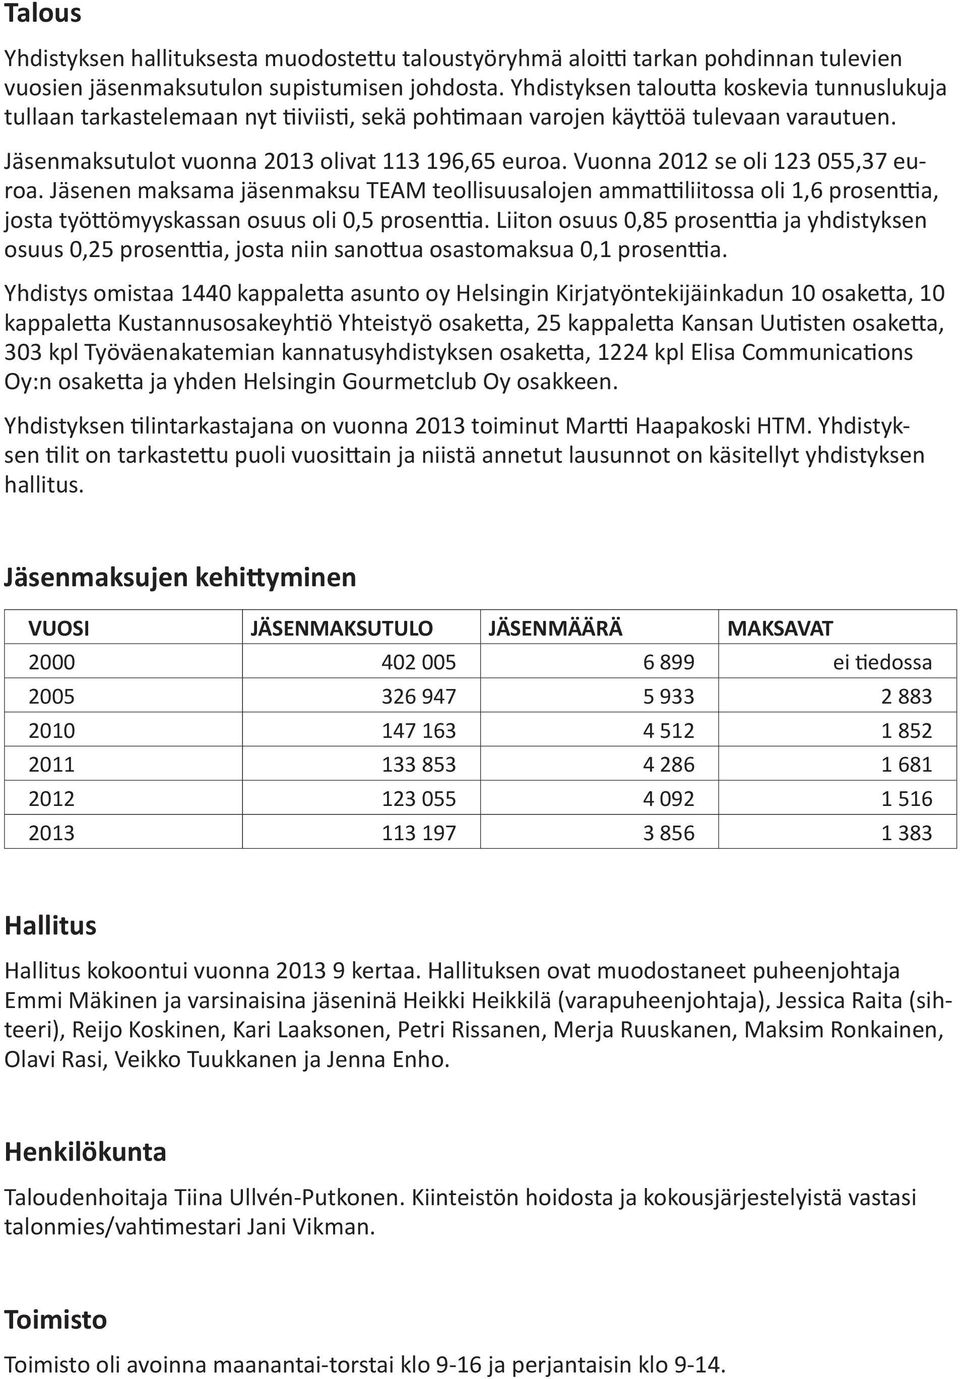 Vuonna 2012 se oli 123 055,37 euroa. Jäsenen maksama jäsenmaksu TEAM teollisuusalojen ammattiliitossa oli 1,6 prosenttia, josta työttömyyskassan osuus oli 0,5 prosenttia.